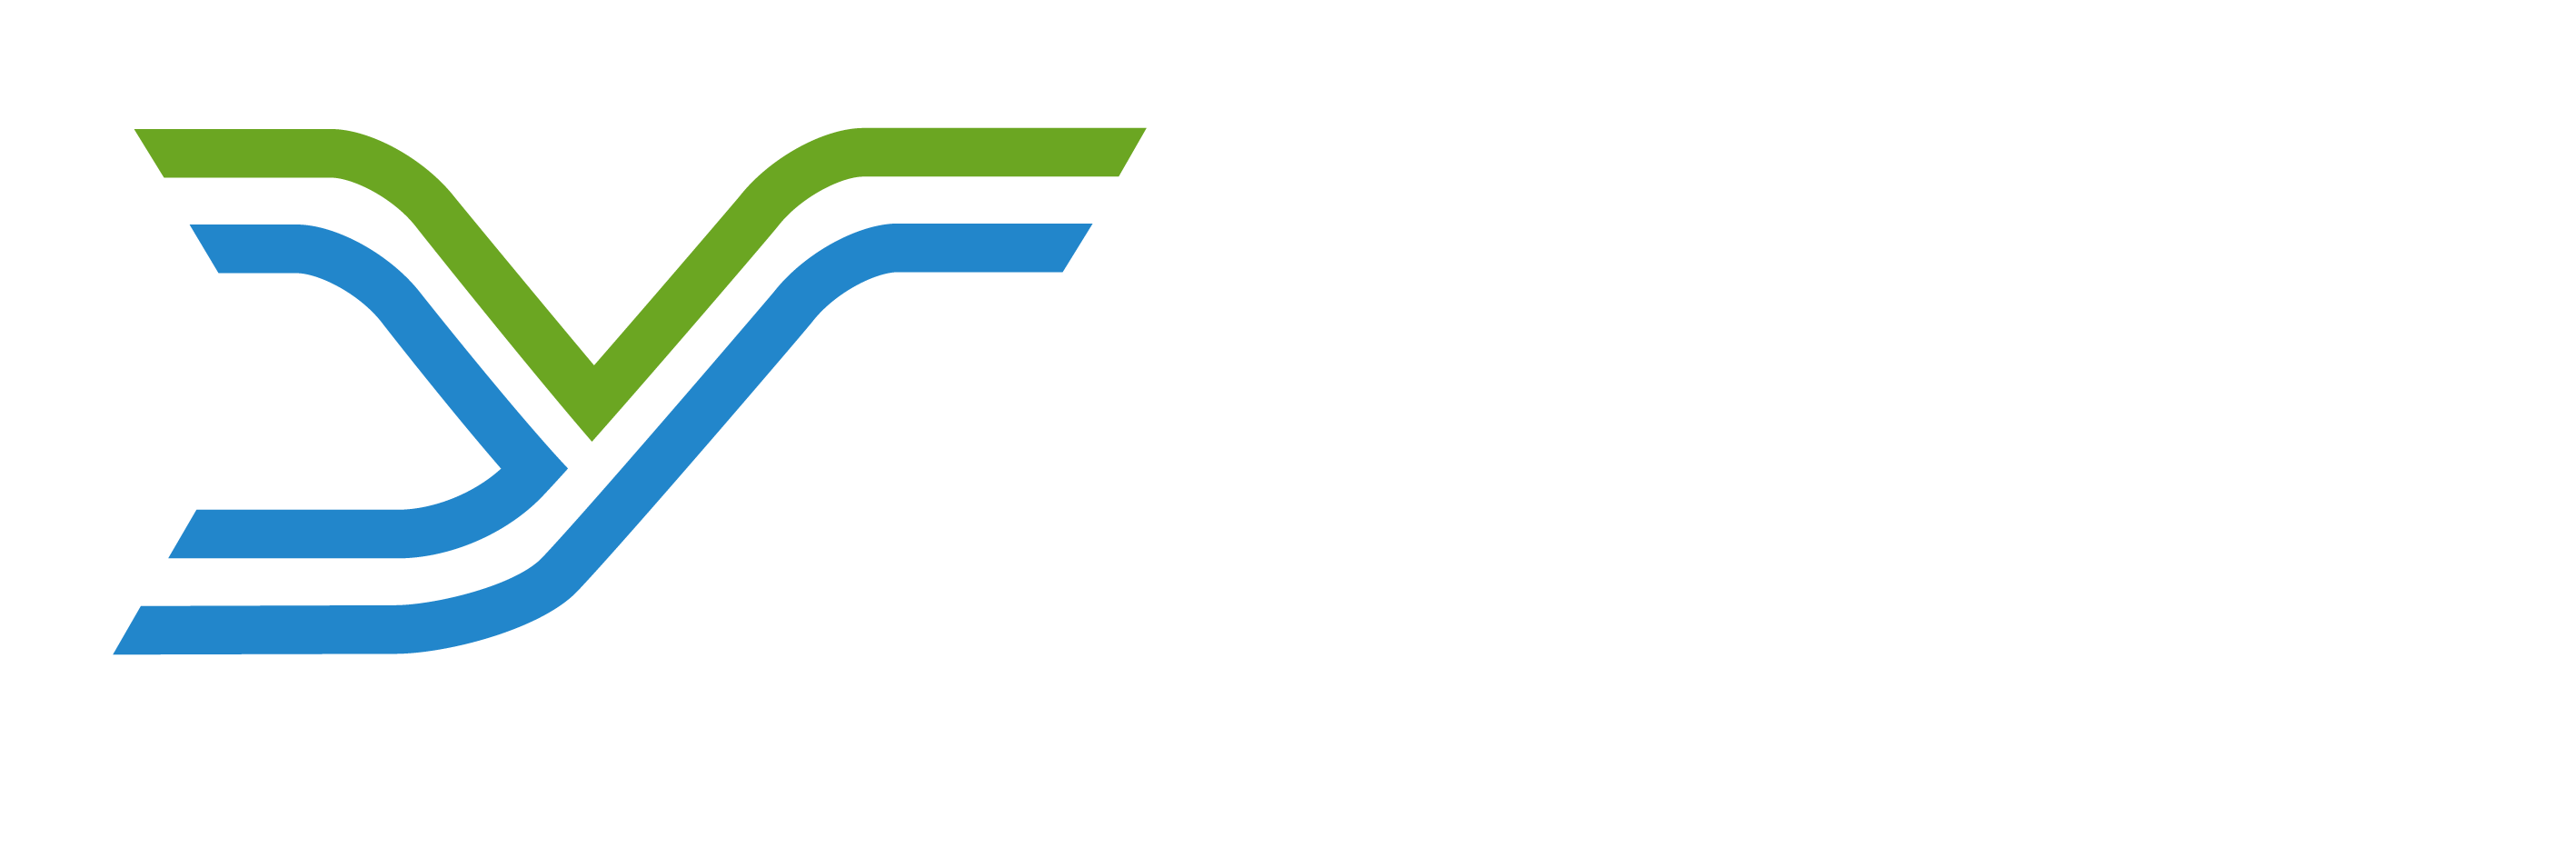 Jeff Salzenstein